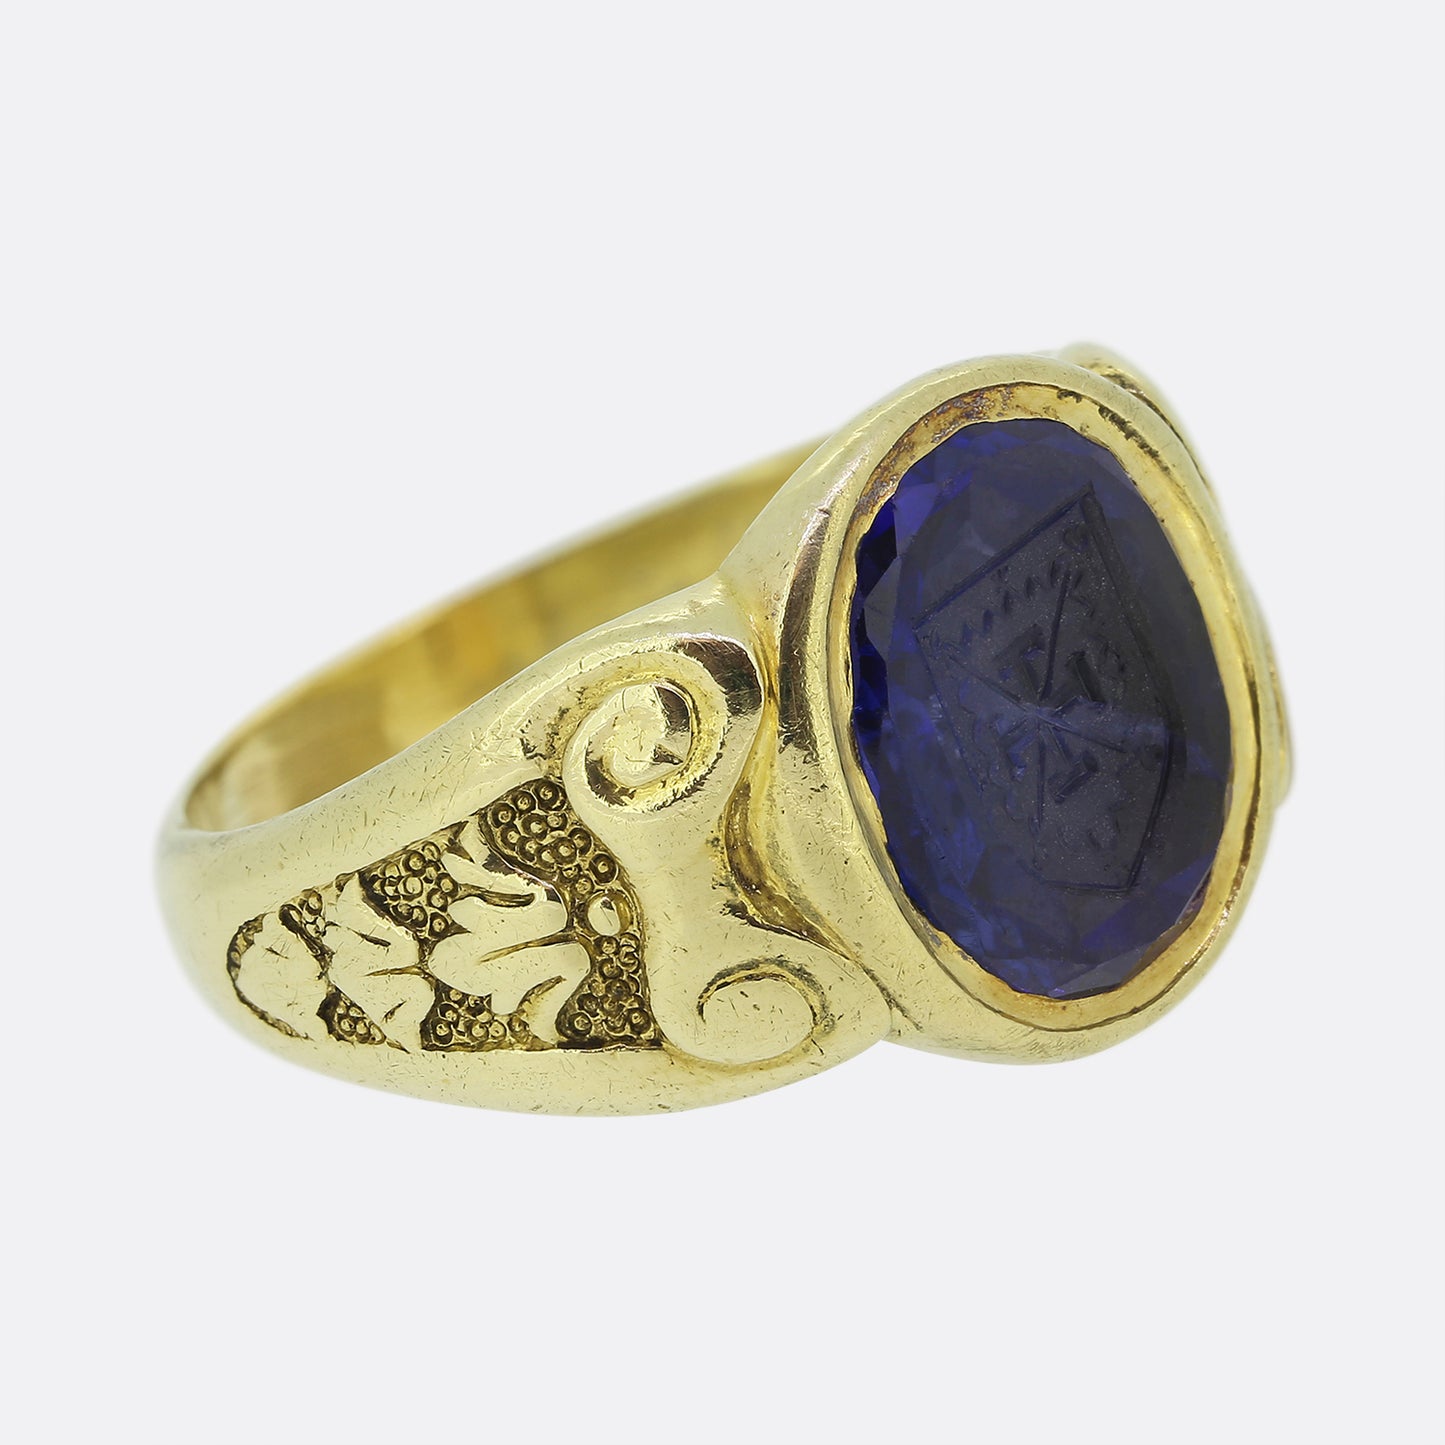 Antique Sapphire Intaglio Signet Ring